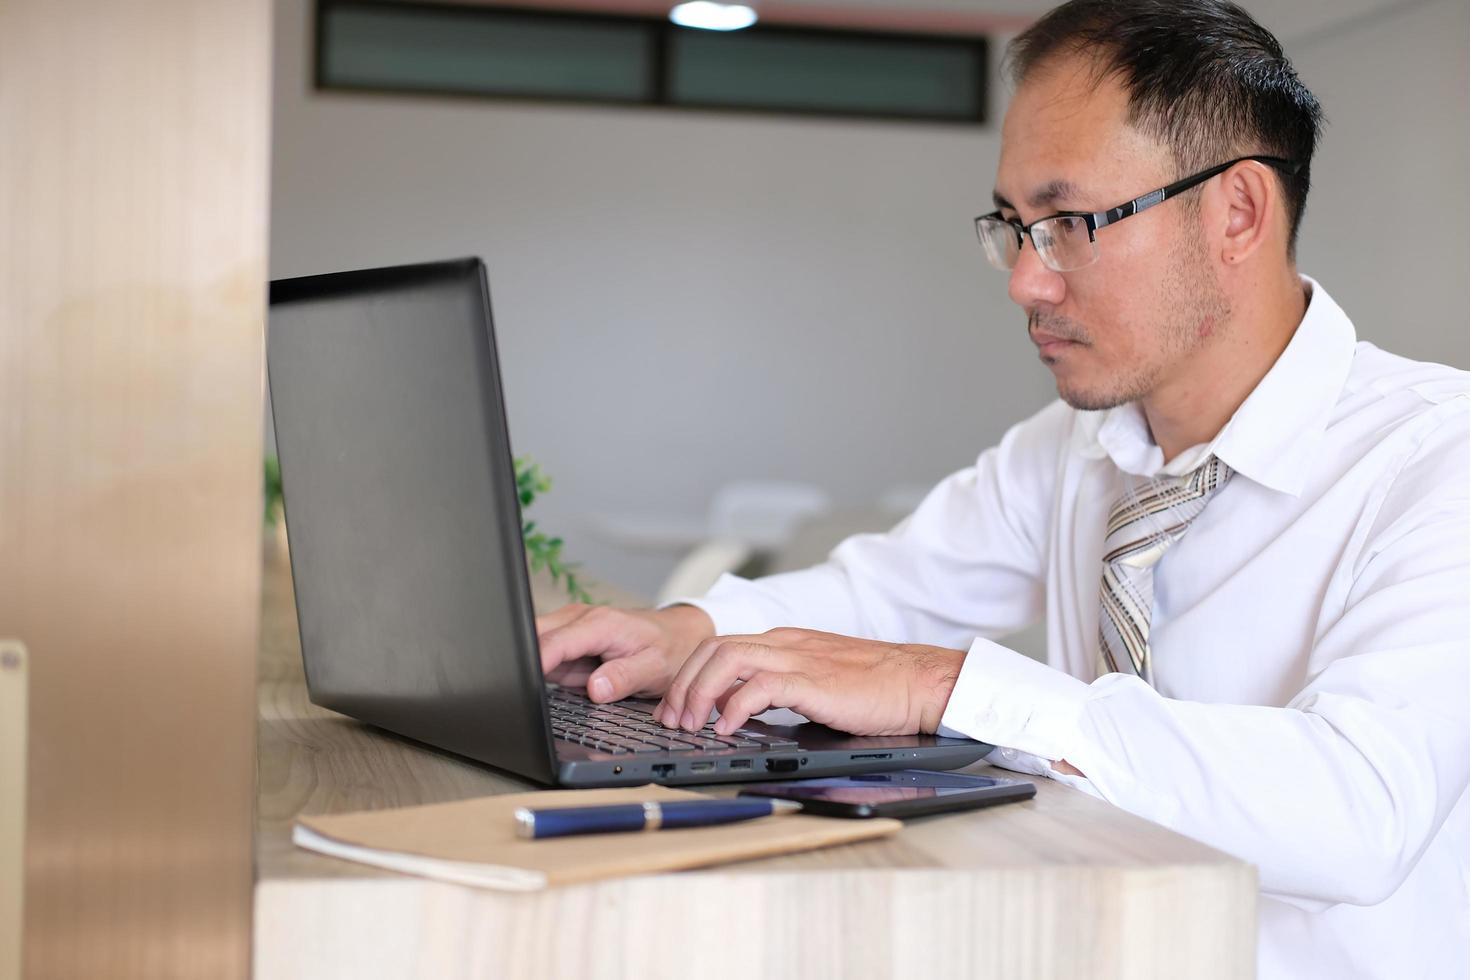 jeune homme d'affaires utilisant un ordinateur portable à son bureau dans un bureau moderne photo